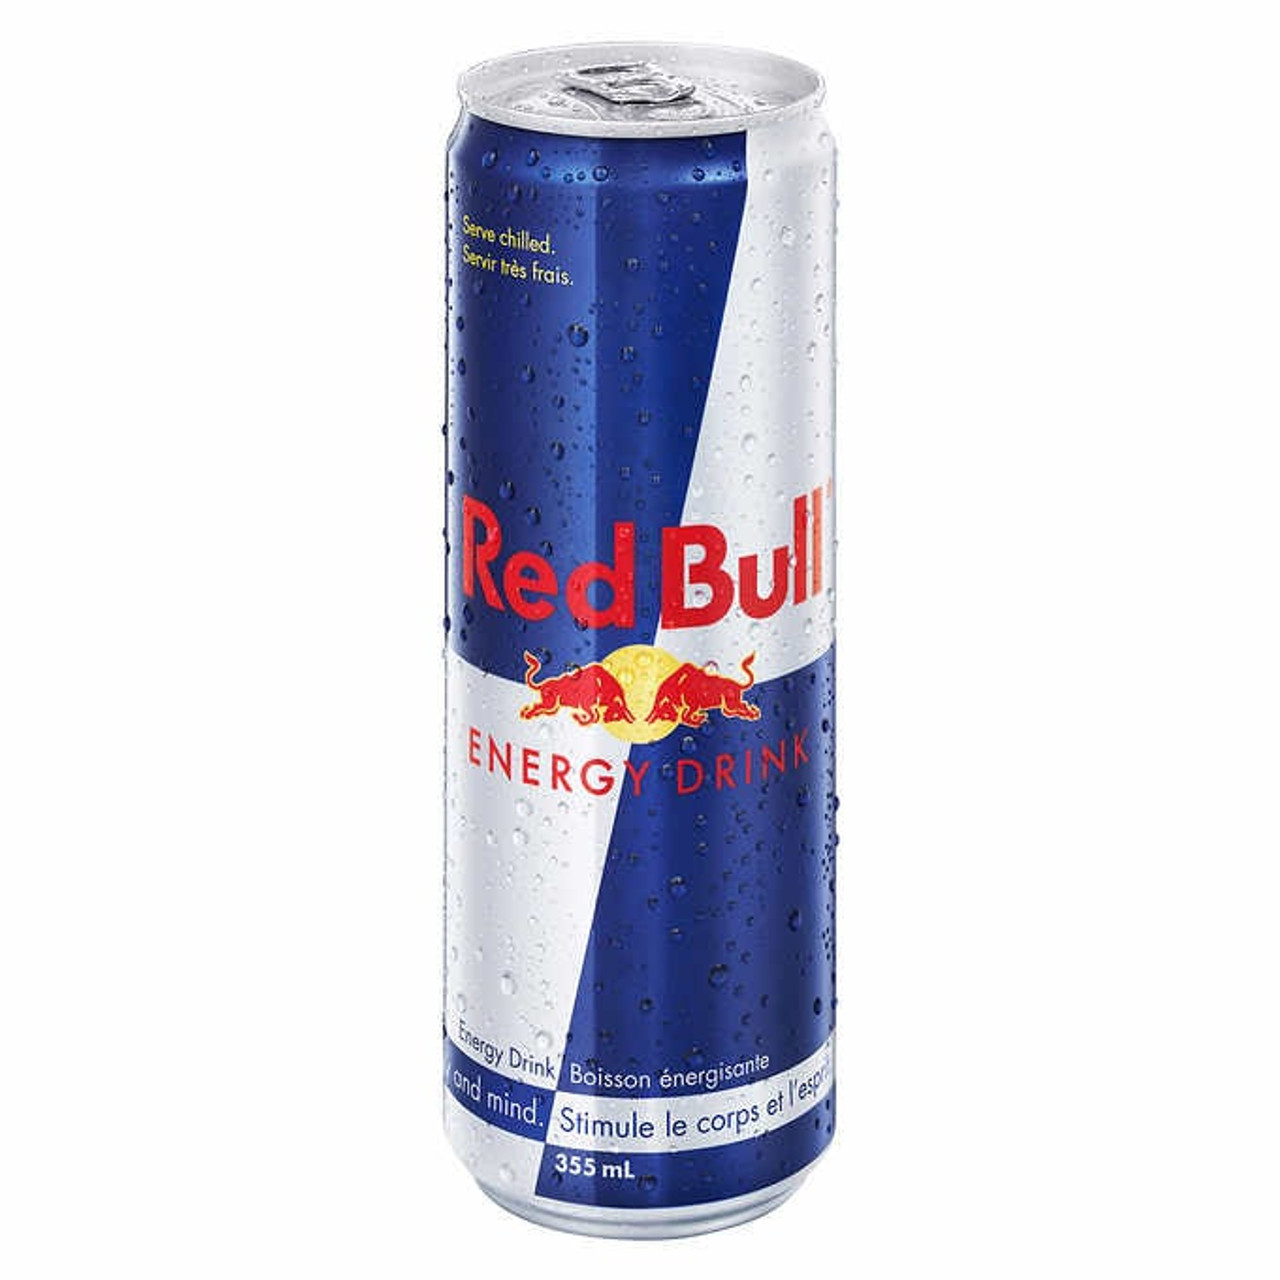 Red Bull Energy Drink, 355 ml (24 pack)